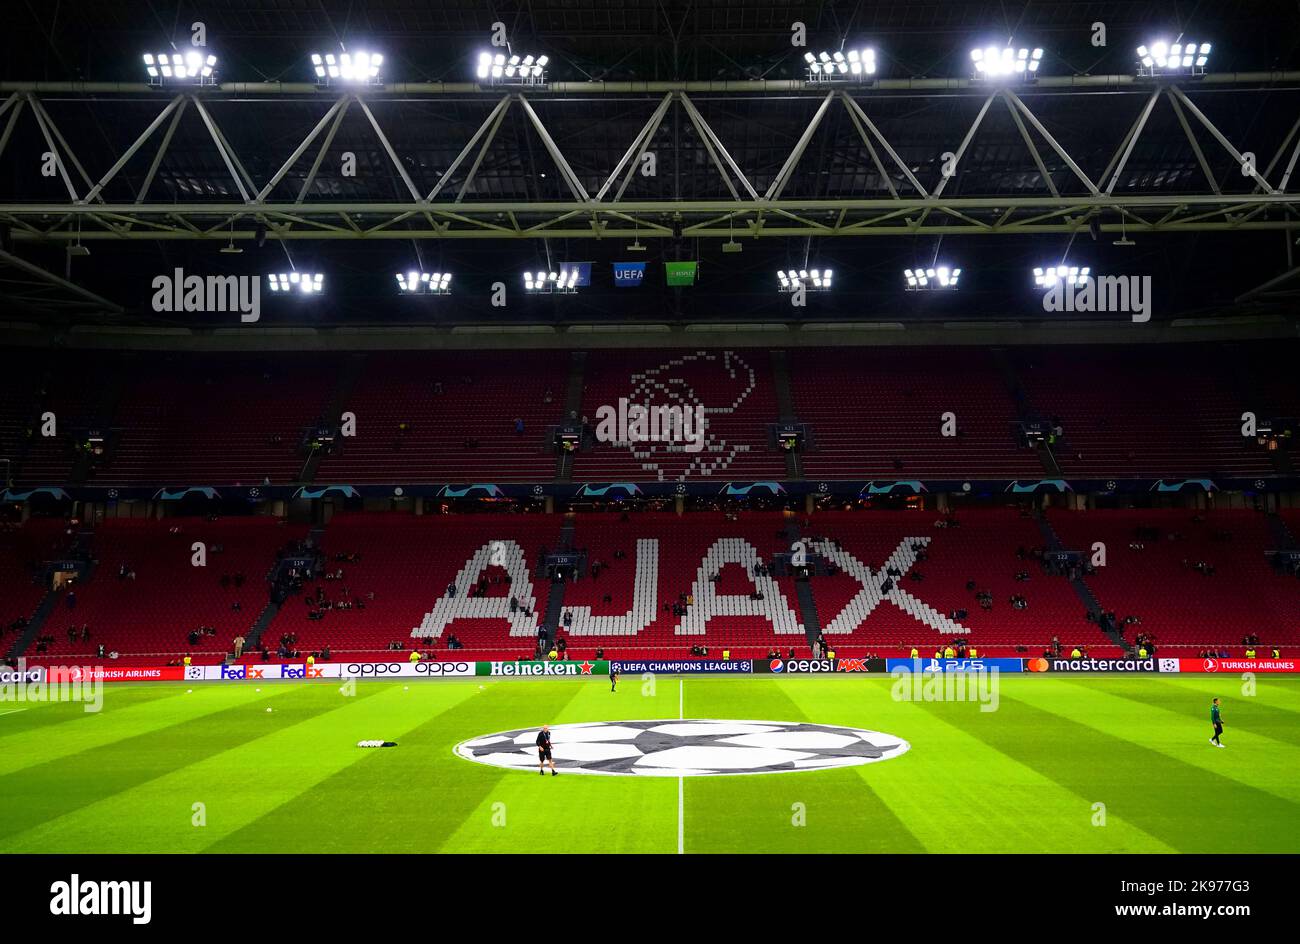 Eine Gesamtansicht des Stadions vor dem Spiel der UEFA Champions League-Gruppe A in der Johan Cruyff Arena in Amsterdam, Niederlande. Bilddatum: Mittwoch, 26. Oktober 2022. Stockfoto